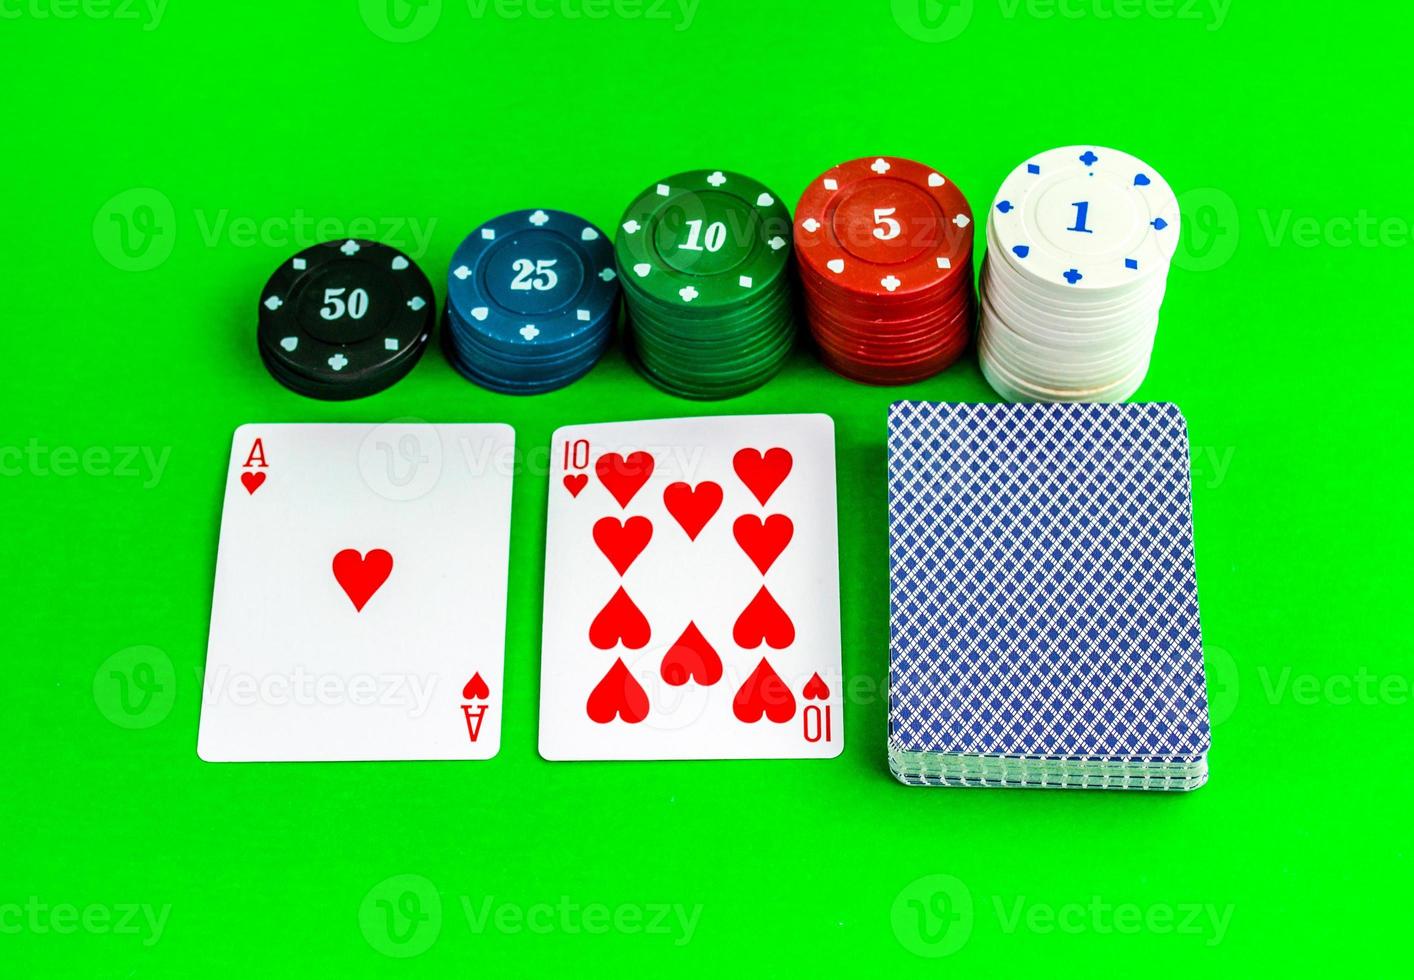 pôquer jogo, ás e dez cartões e salgadinhos. foto